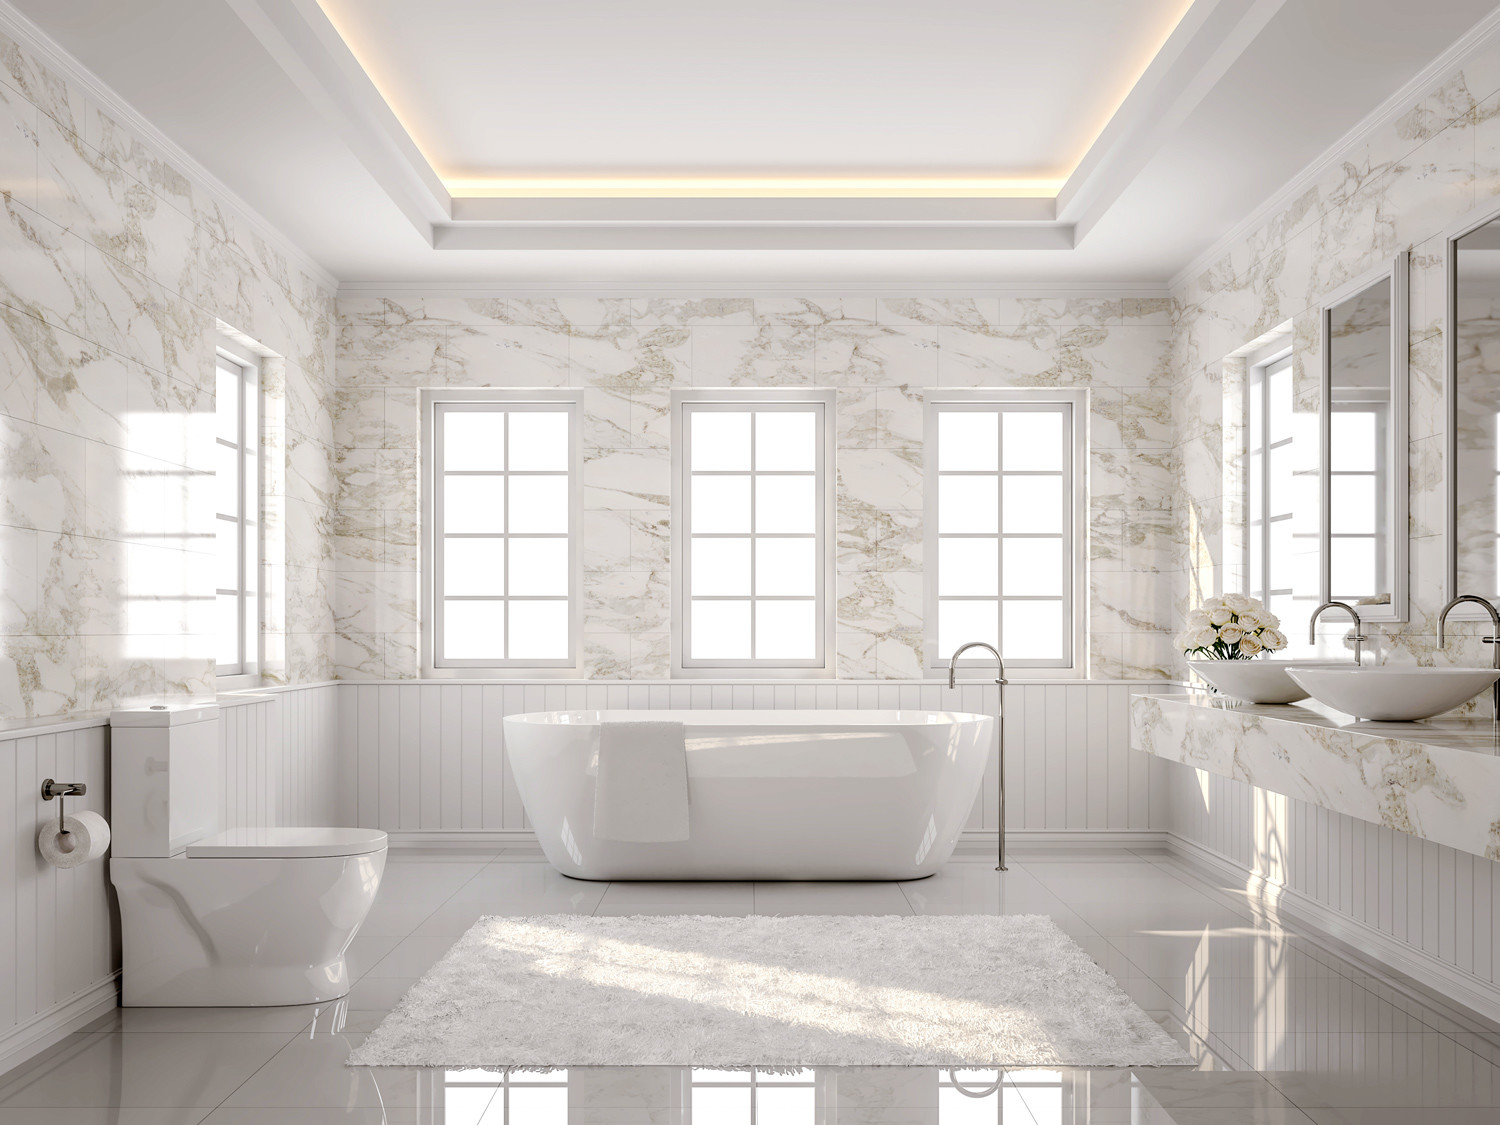 Carrelage De Luxe top 10 Inspiring Bathroom Tile Trends for 2019